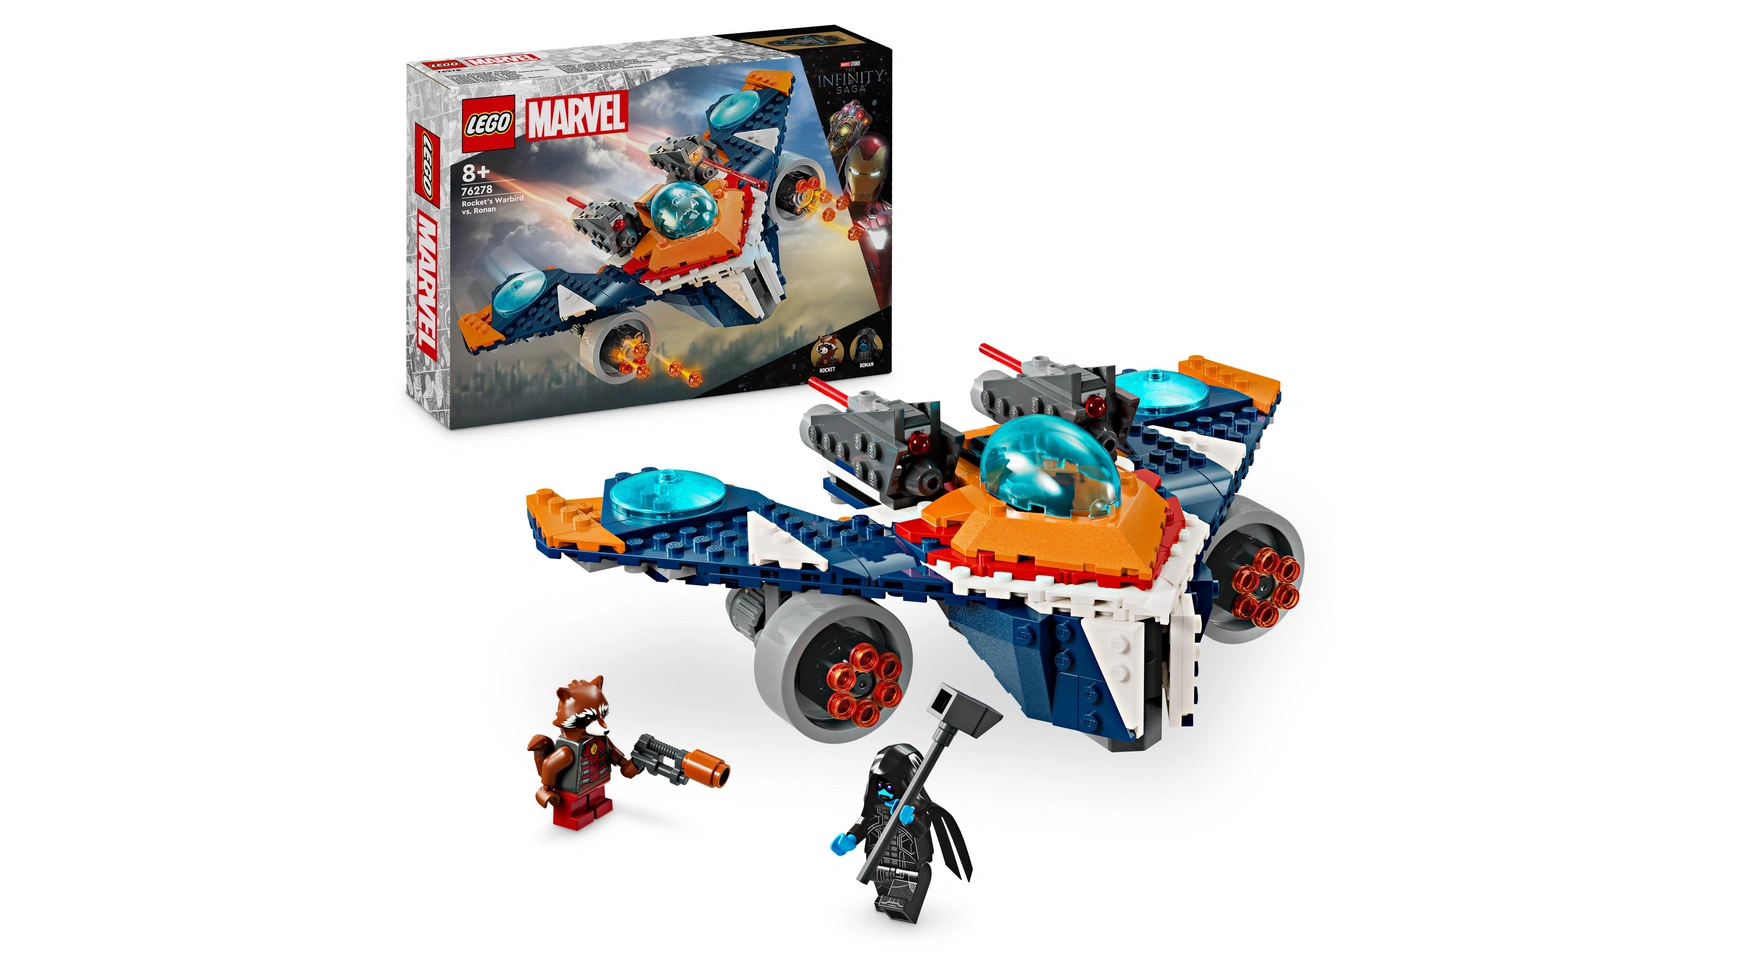 Lego Marvel Набор Ракеты Космический корабль против Ронана, игрушечный космический корабль